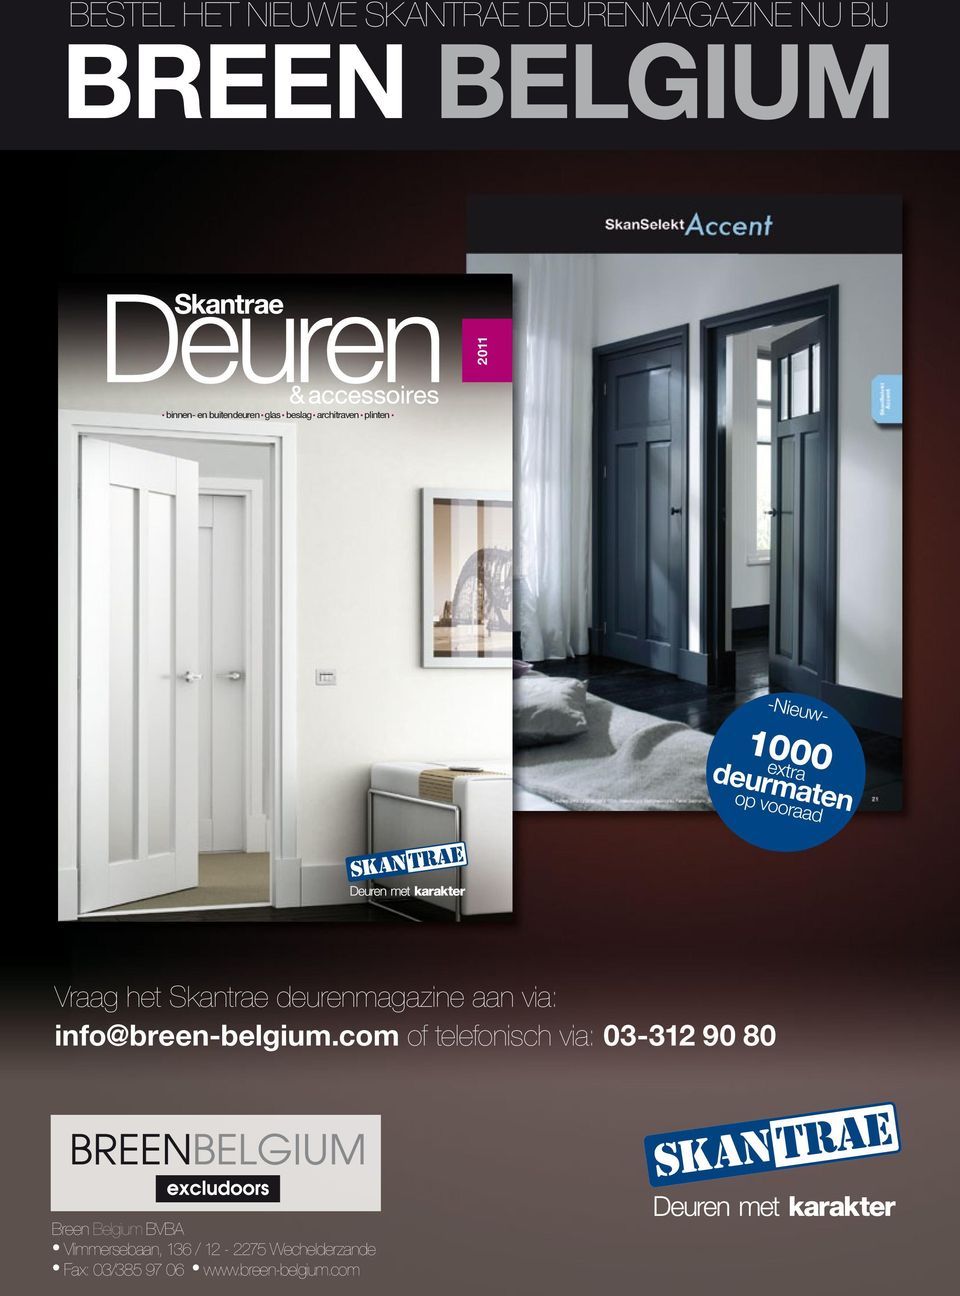 com 2010/2011 2011 -Nieuw- 1000 extra deurmaten op vooraad Vraag het Skantrae deurenmagazine aan via: info@breen-belgium.